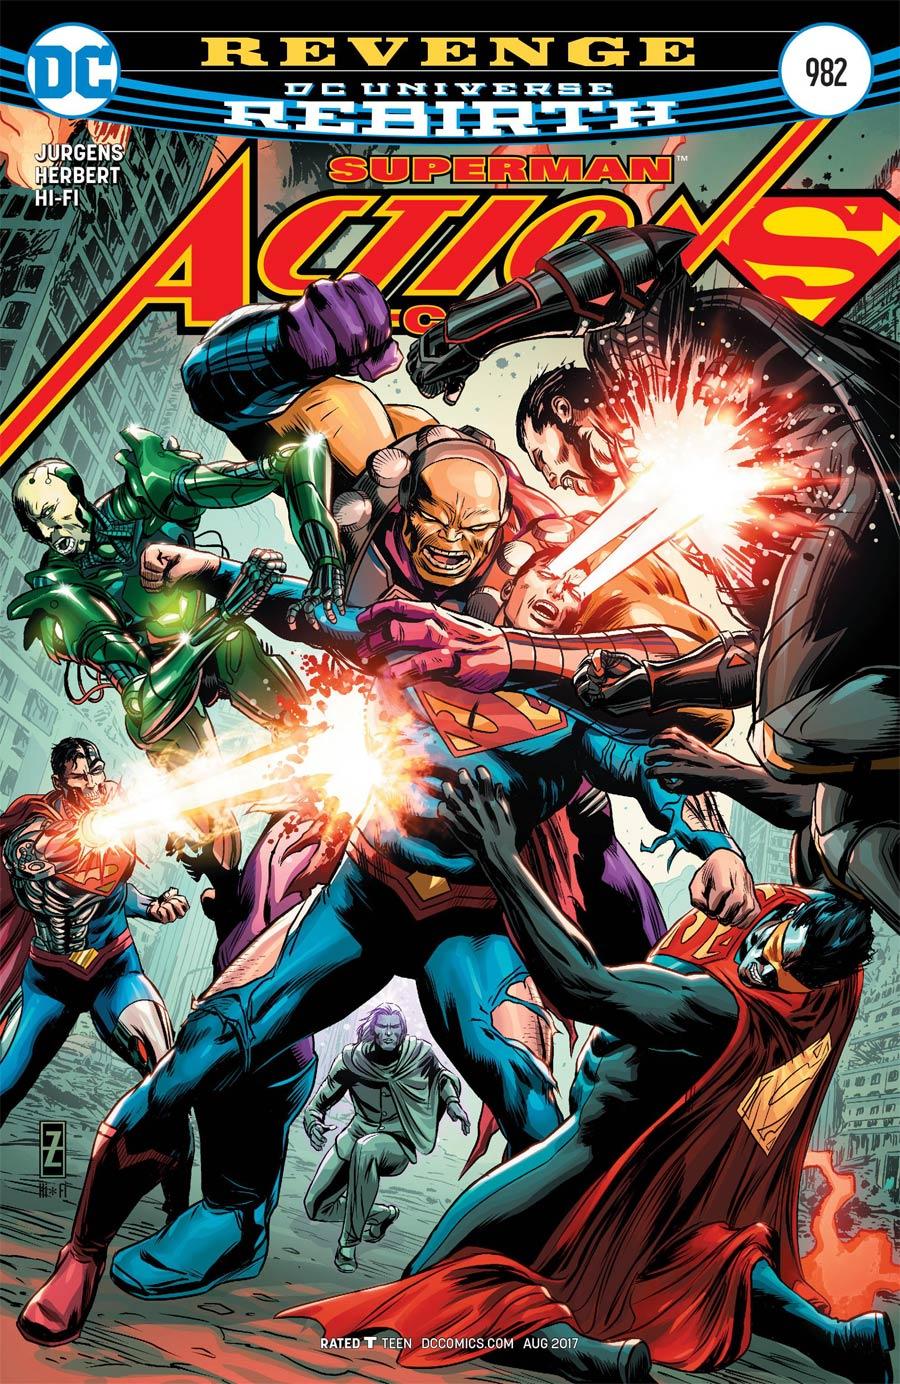 Action Comics Vol. 2 #982